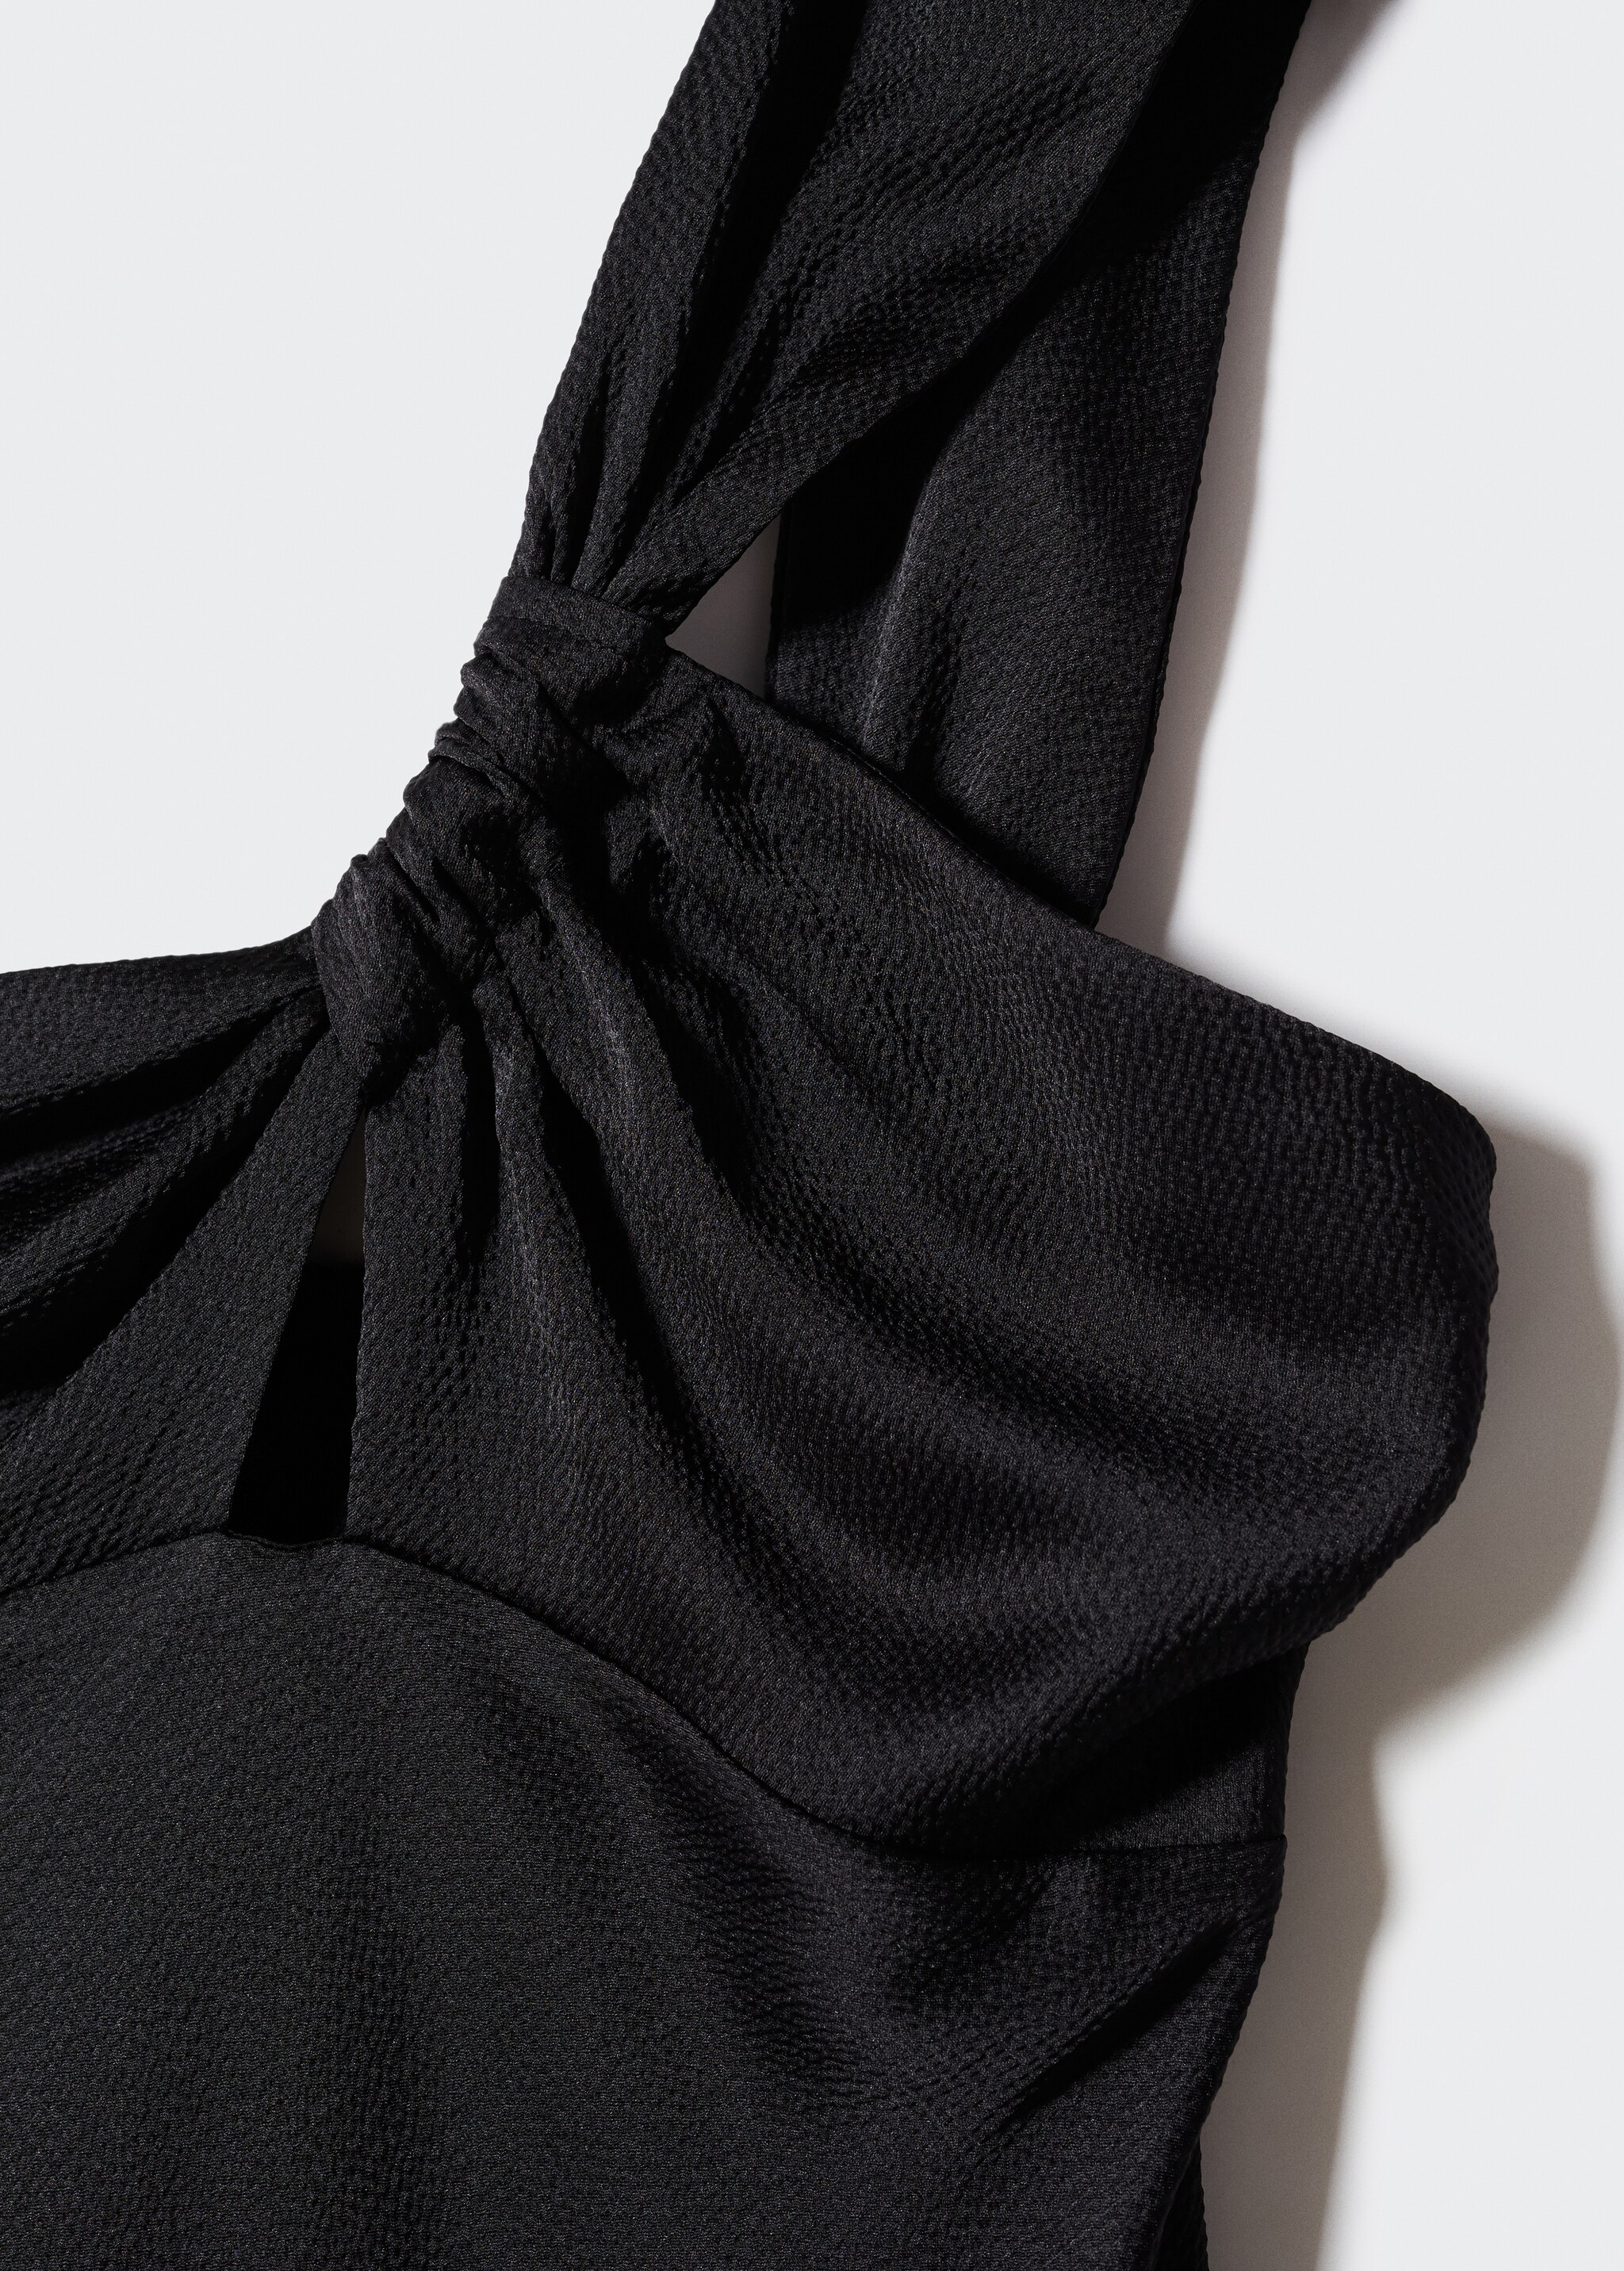 Φόρεμα μαύρο σατέν ασύμμετρο - Λεπτομέρεια του προϊόντος 8